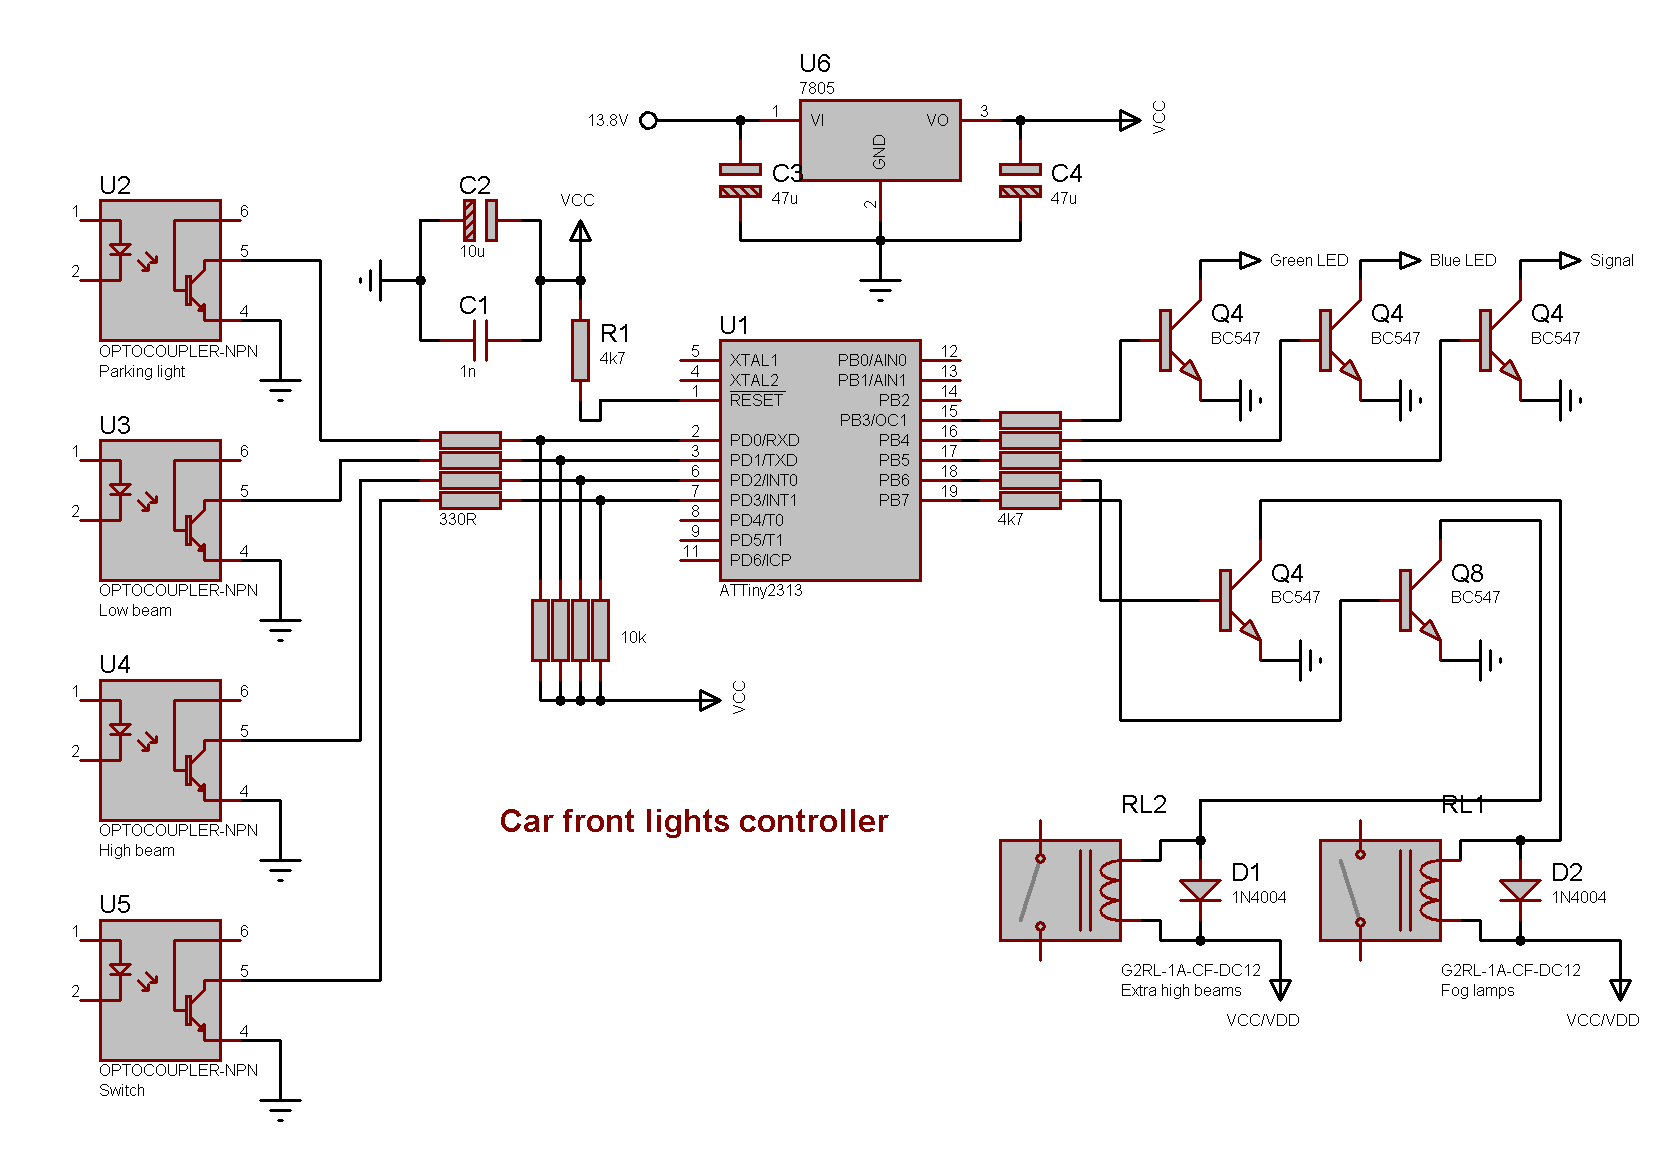 Car front lights controller schematics